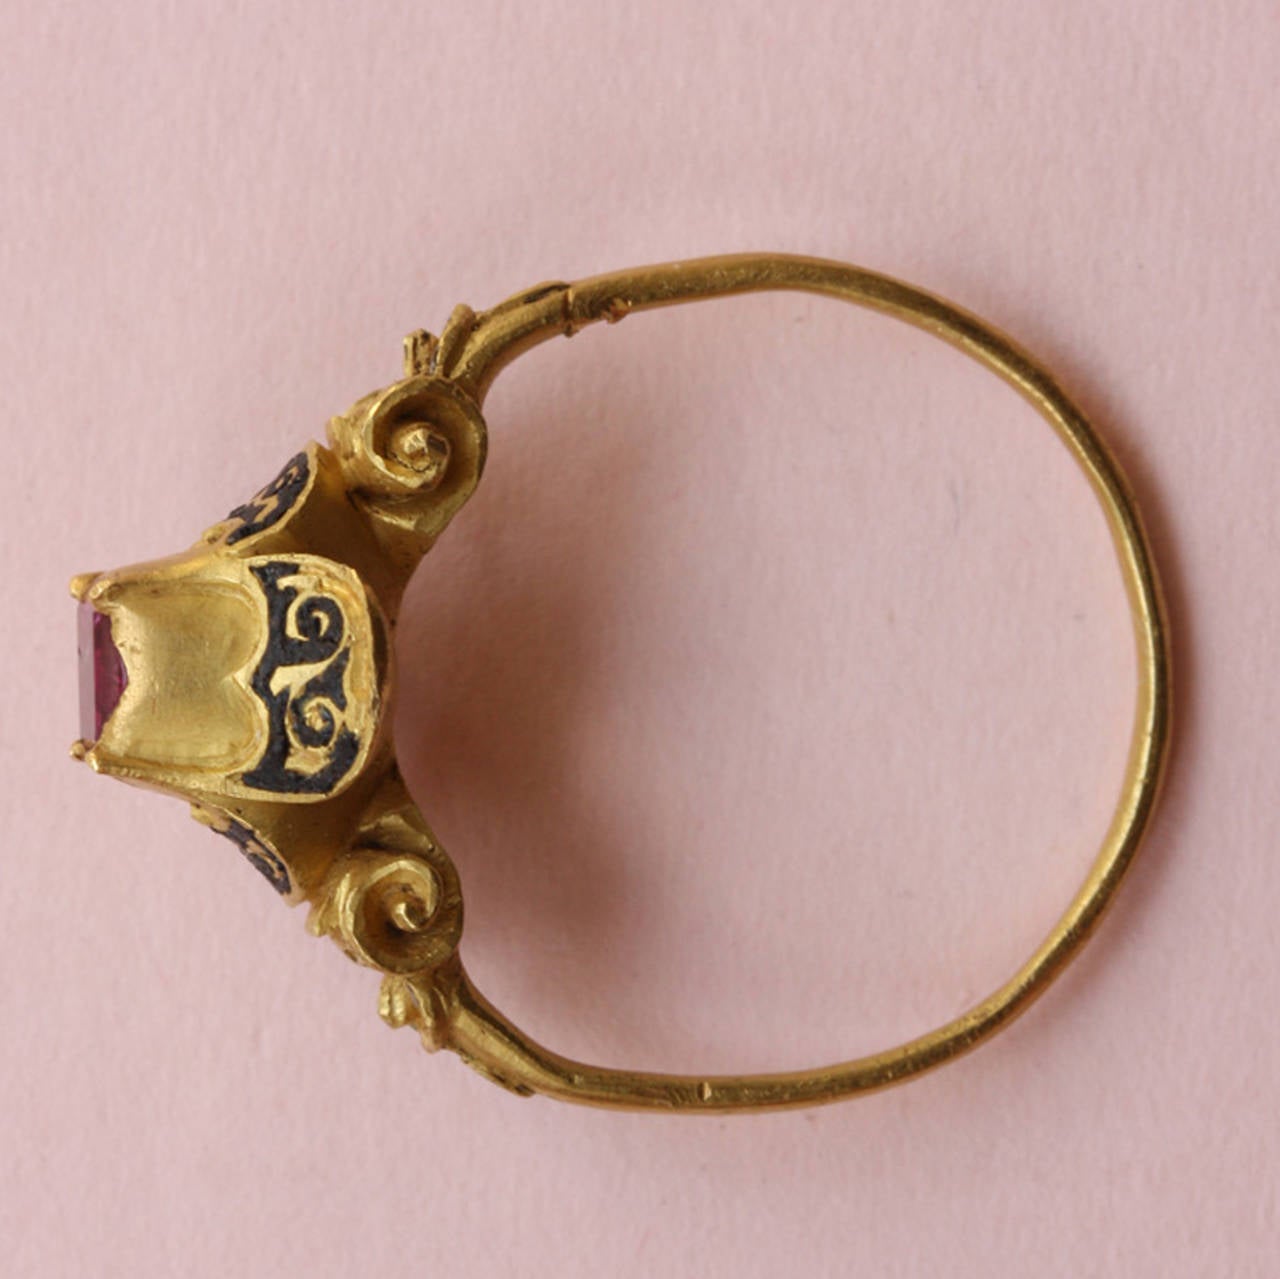 16th century rings